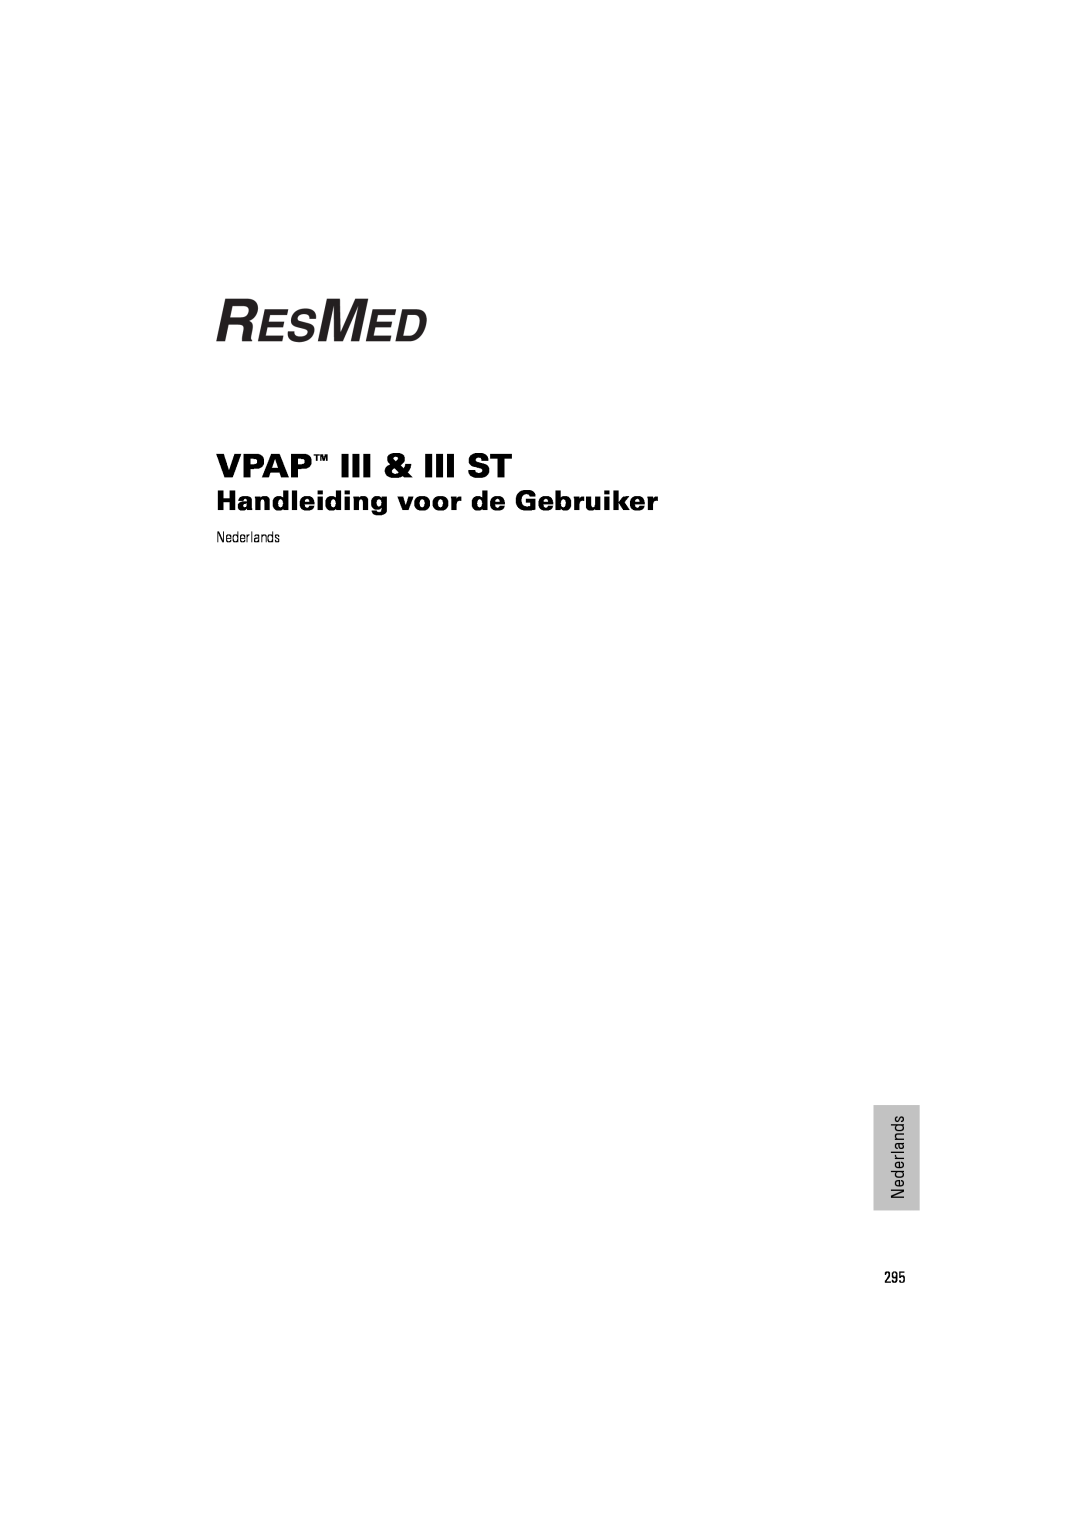 ResMed III & III ST user manual Handleiding voor de Gebruiker, Vpap Iii & Iii St, Nederlands 